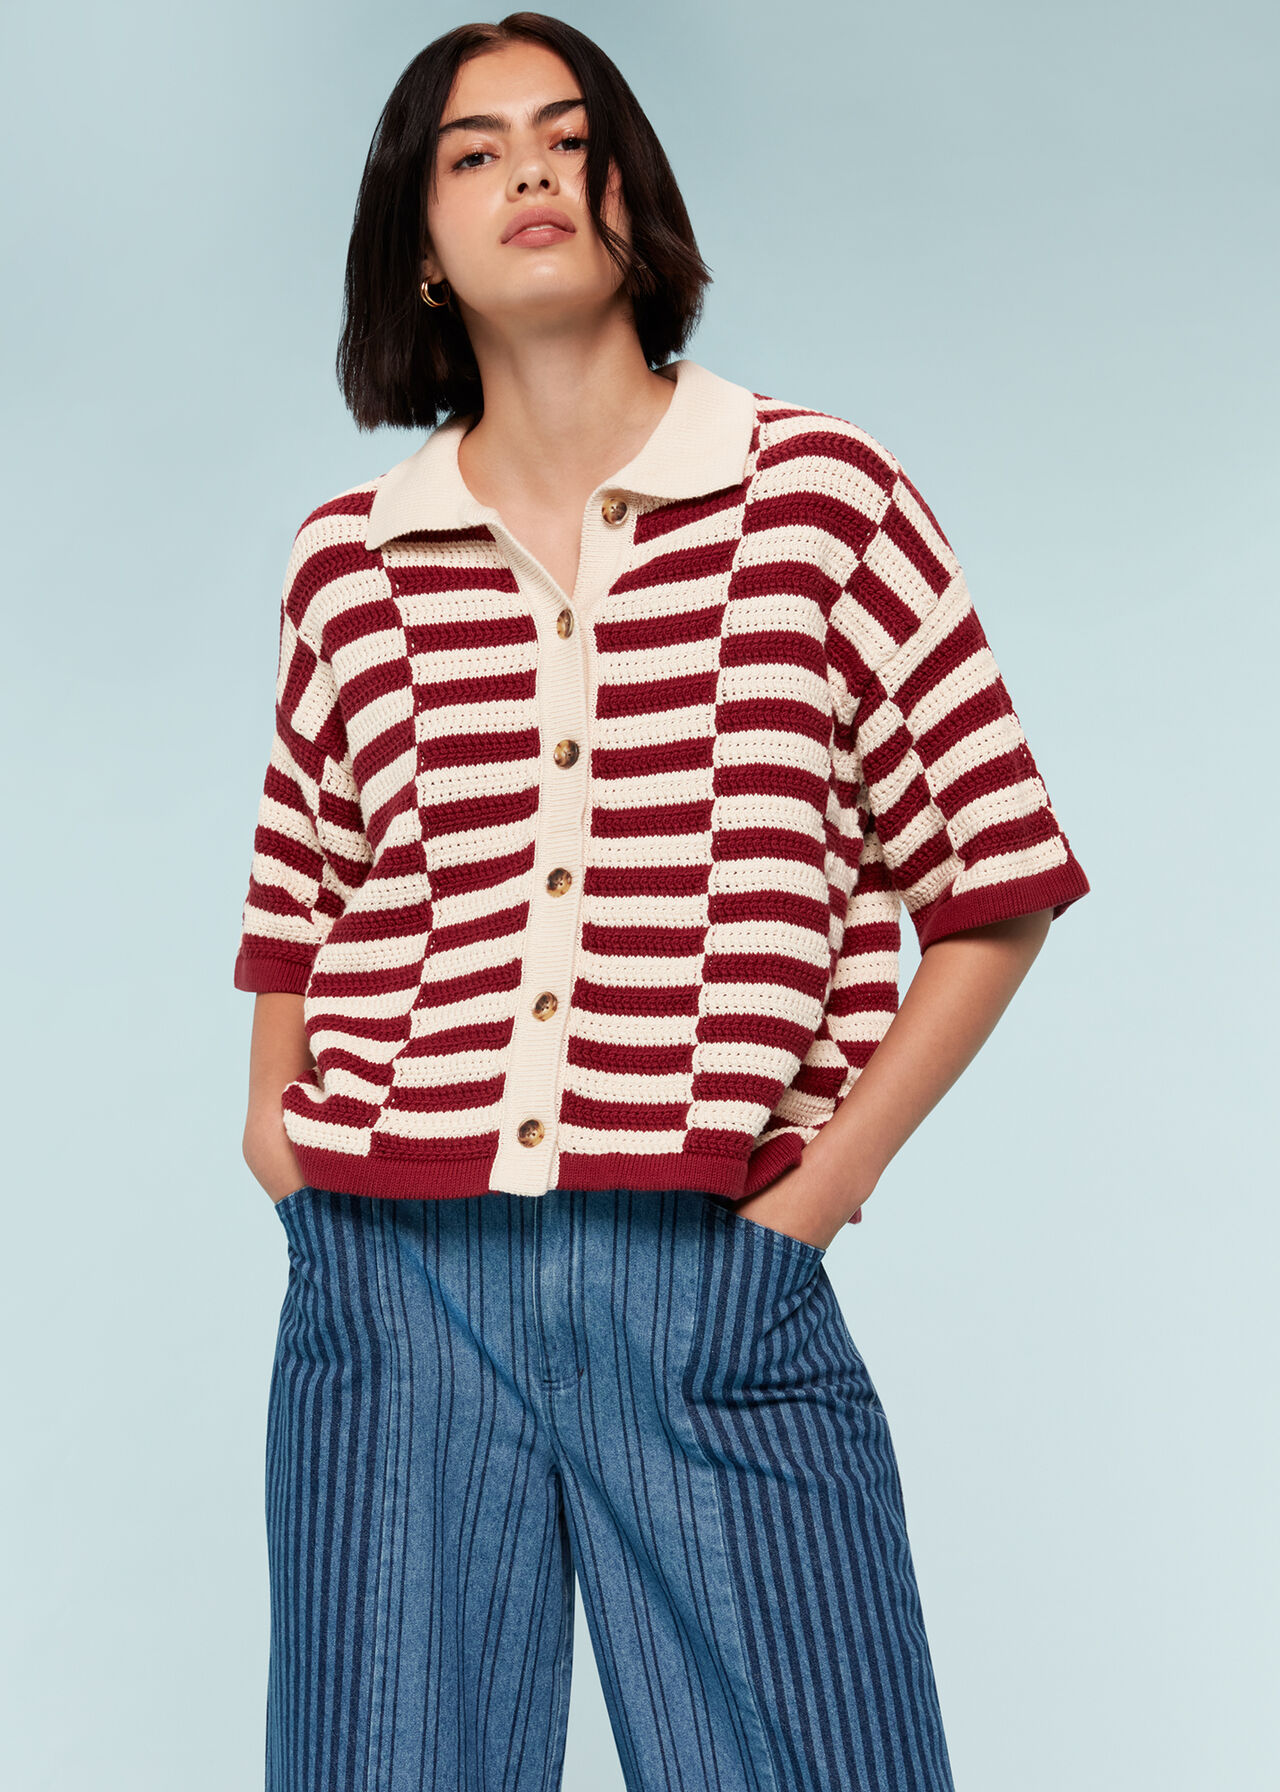 Crochet Stepped Stripe Shirt